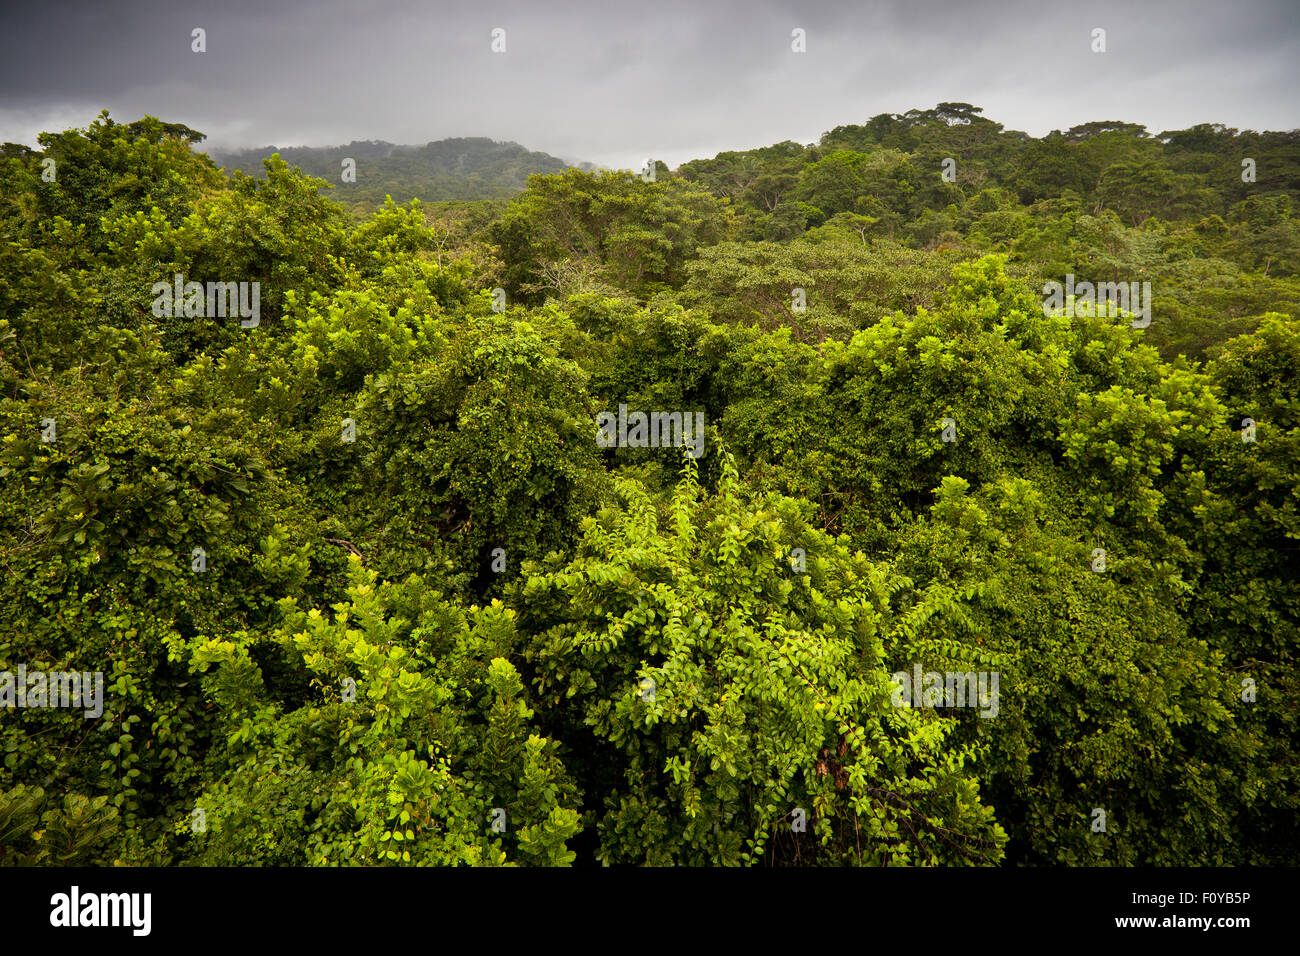 Foresta pluviale durante la stagione delle piogge con nuova crescita verde nel parco nazionale di Soberania, Repubblica di Panama. Foto Stock